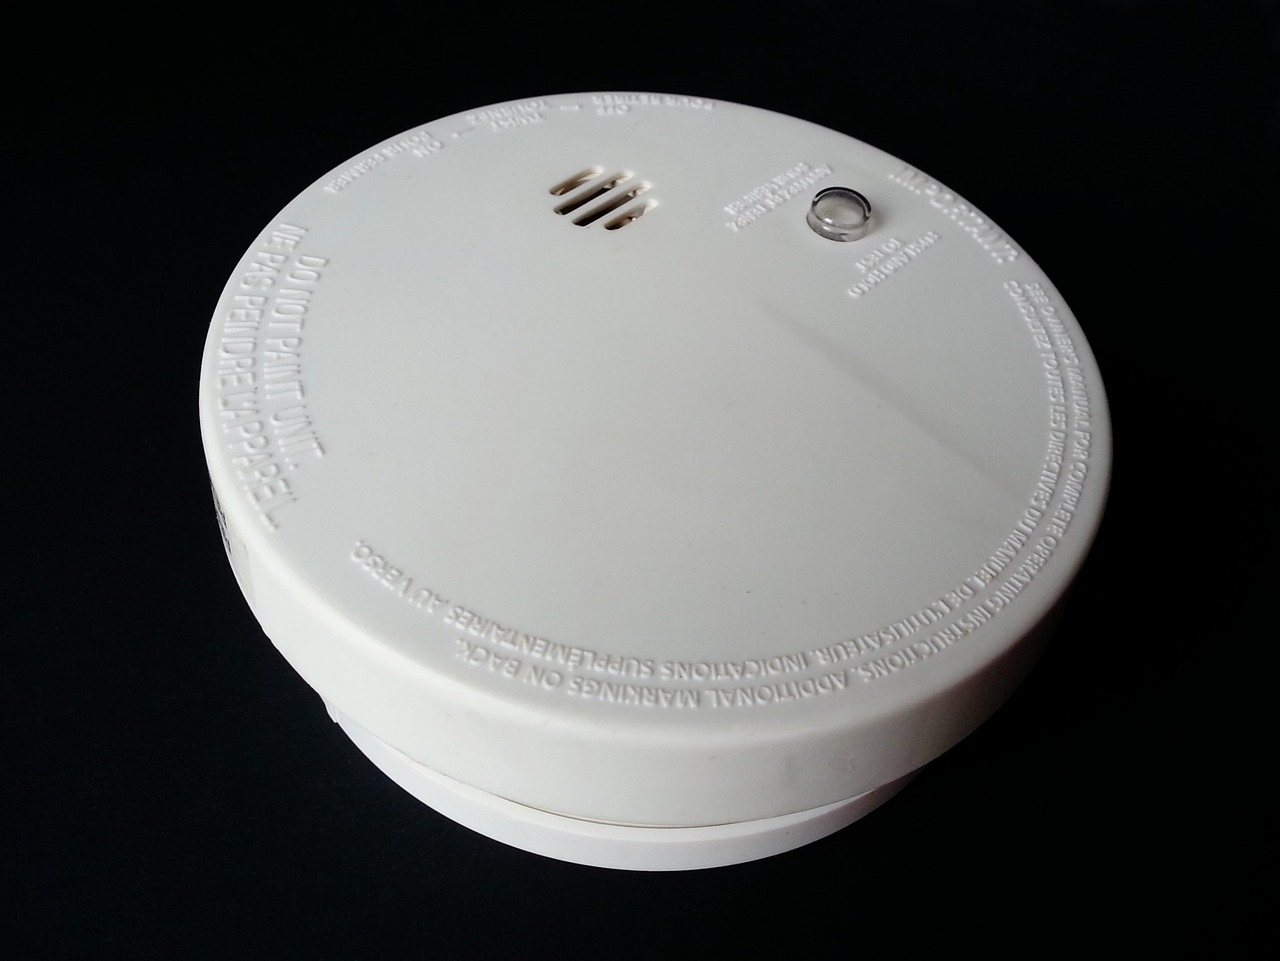 Where Should I Install a Heat Detector? - Alarm Grid